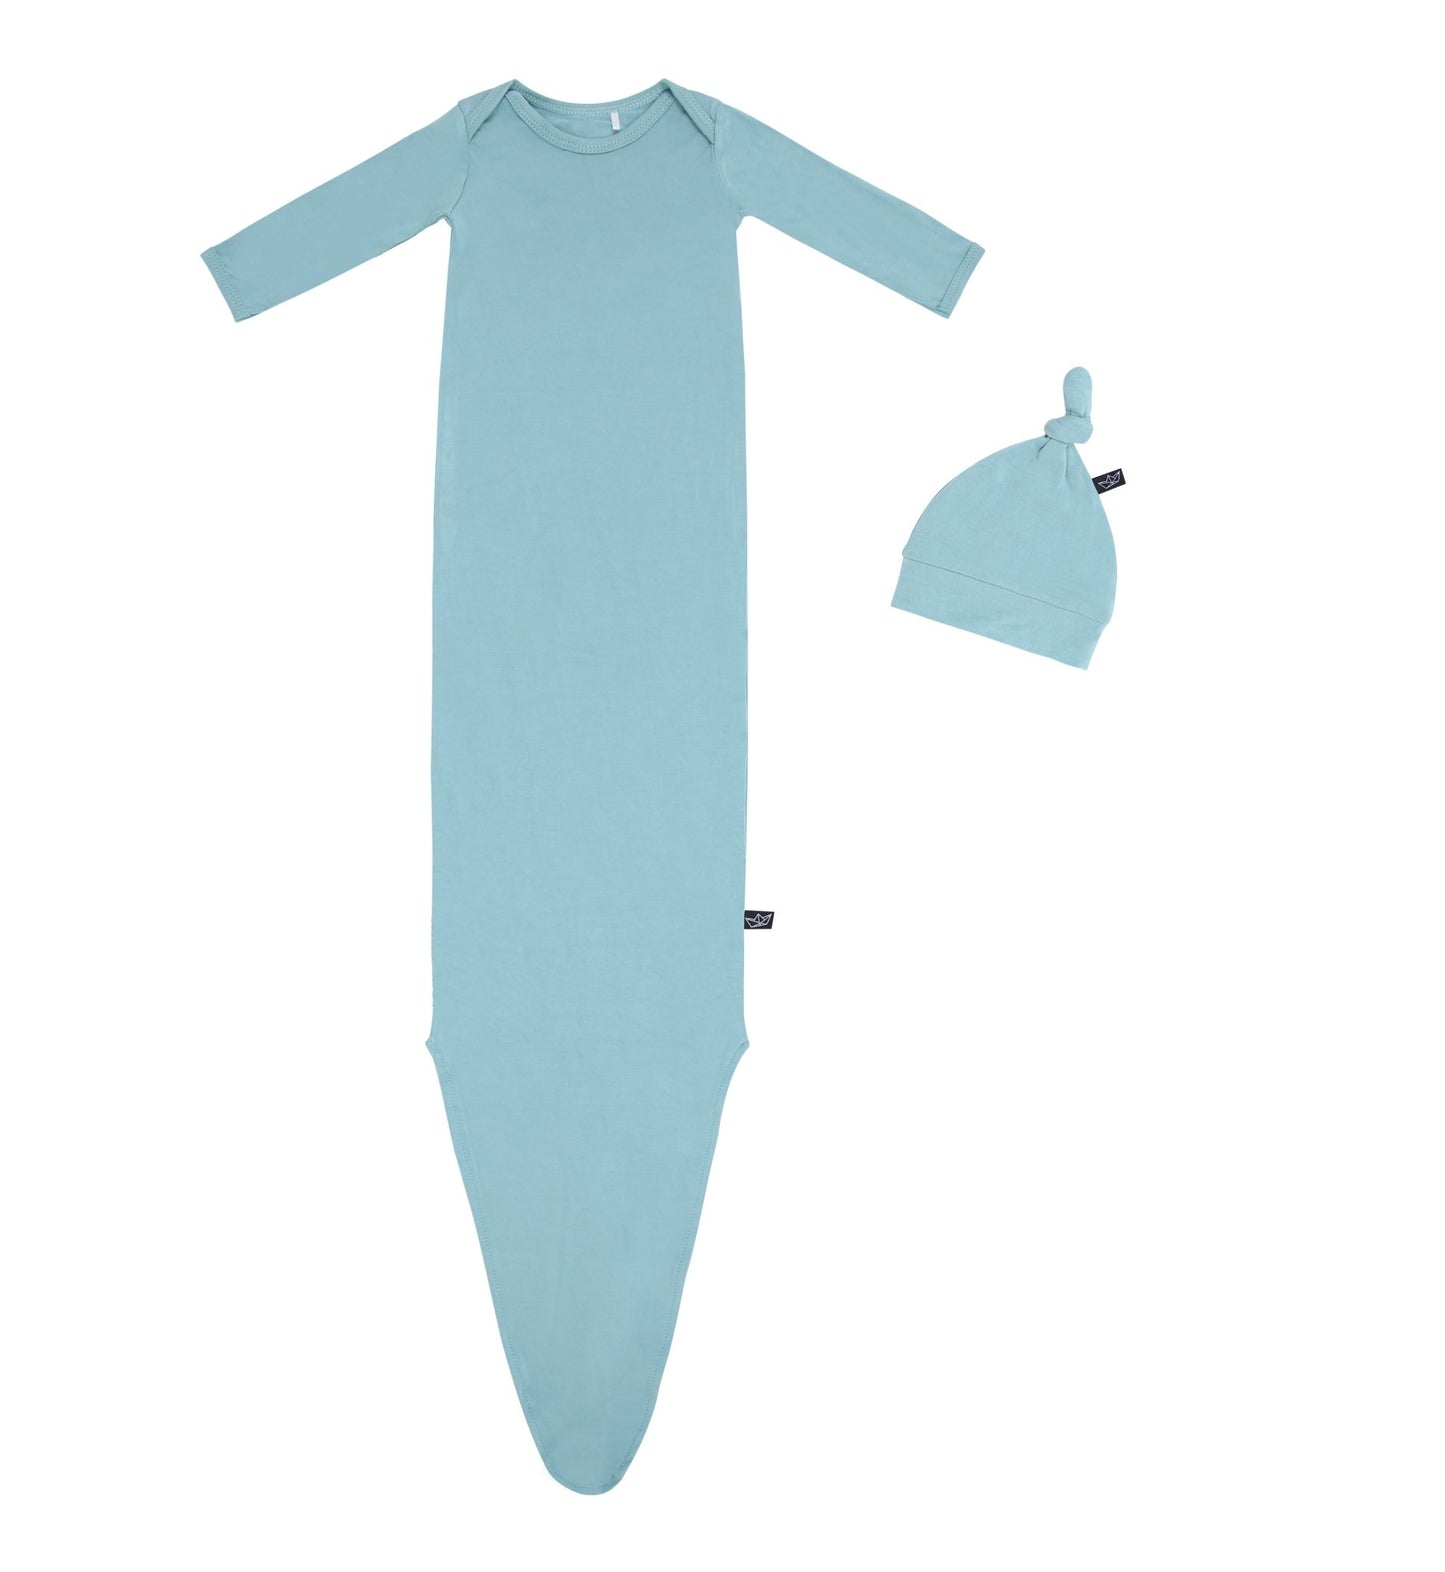 Aquamarine Bamboo Knotted Newborn Baby Gown + Hat Set - Peregrine Kidswear - Newborn Gown + Hat Sets - NEWBORN